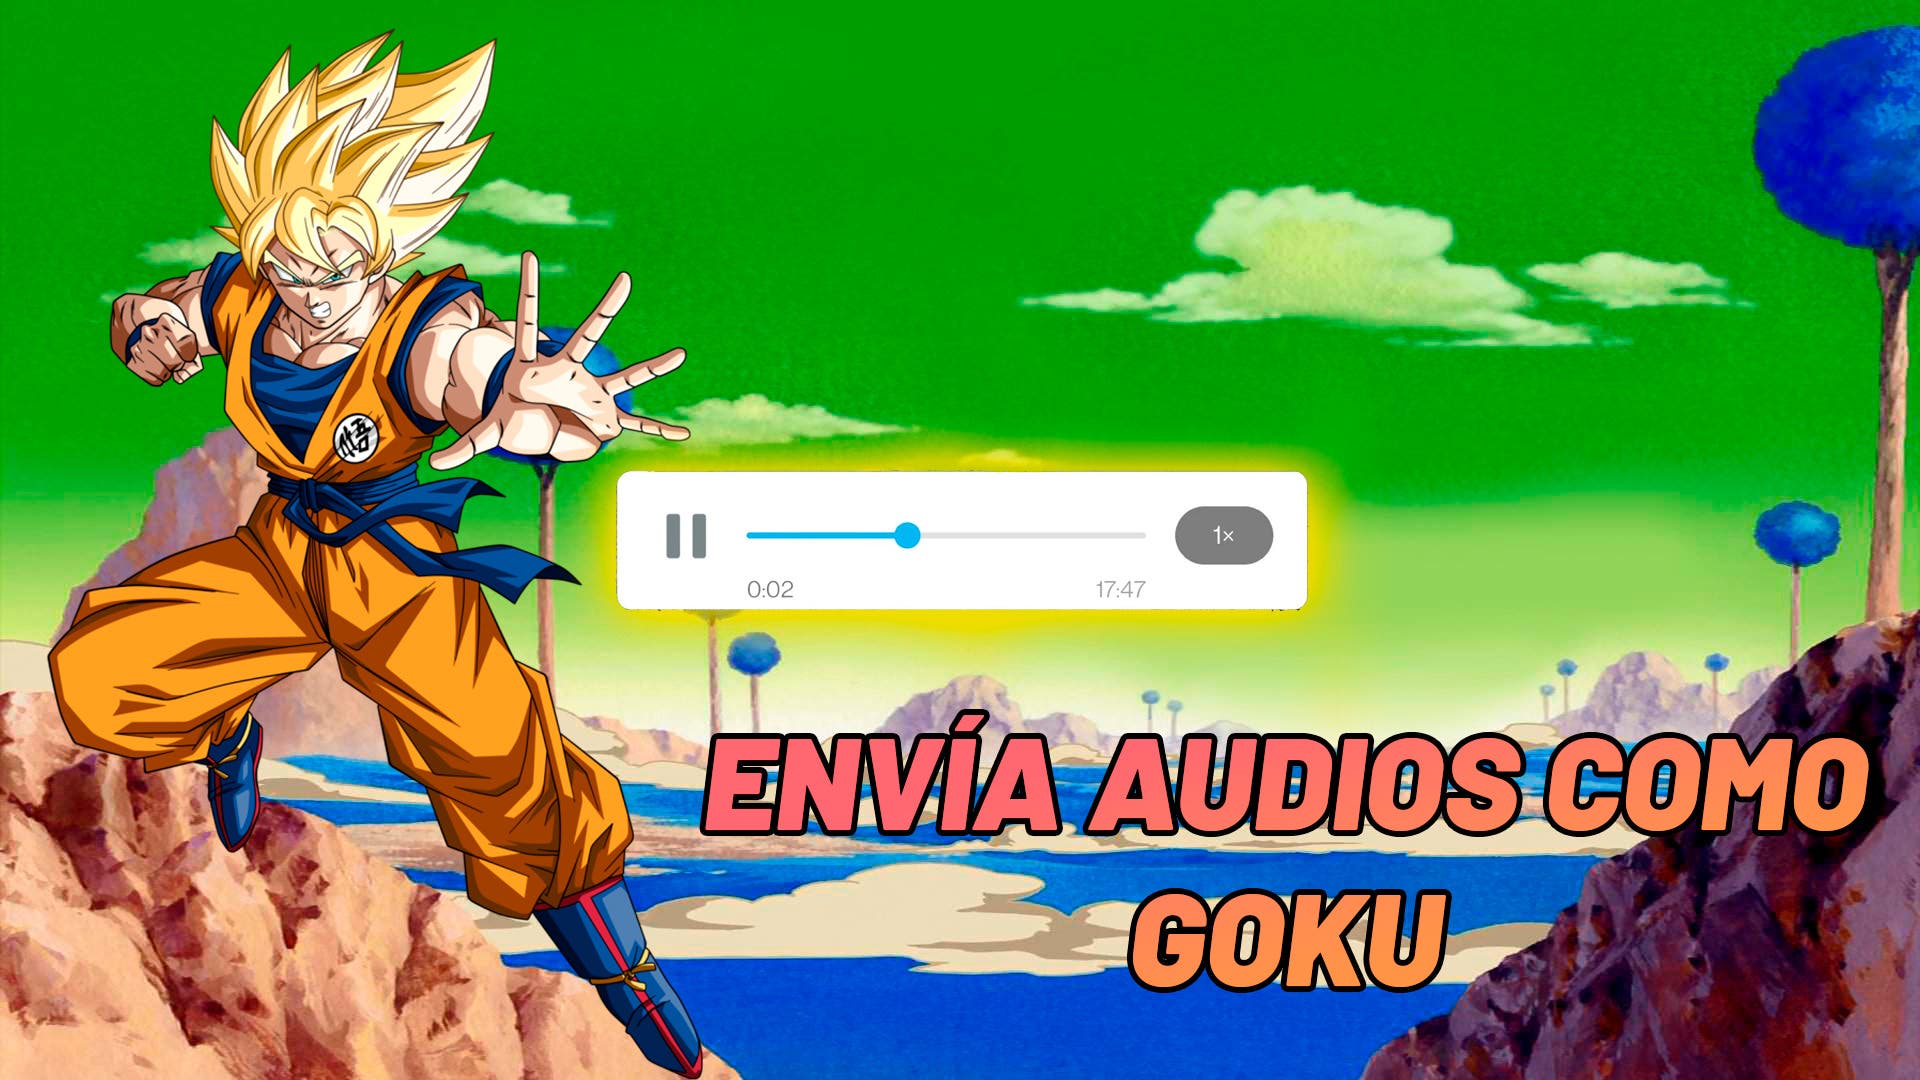 Envía audios como si fueras Goku en WhatsApp